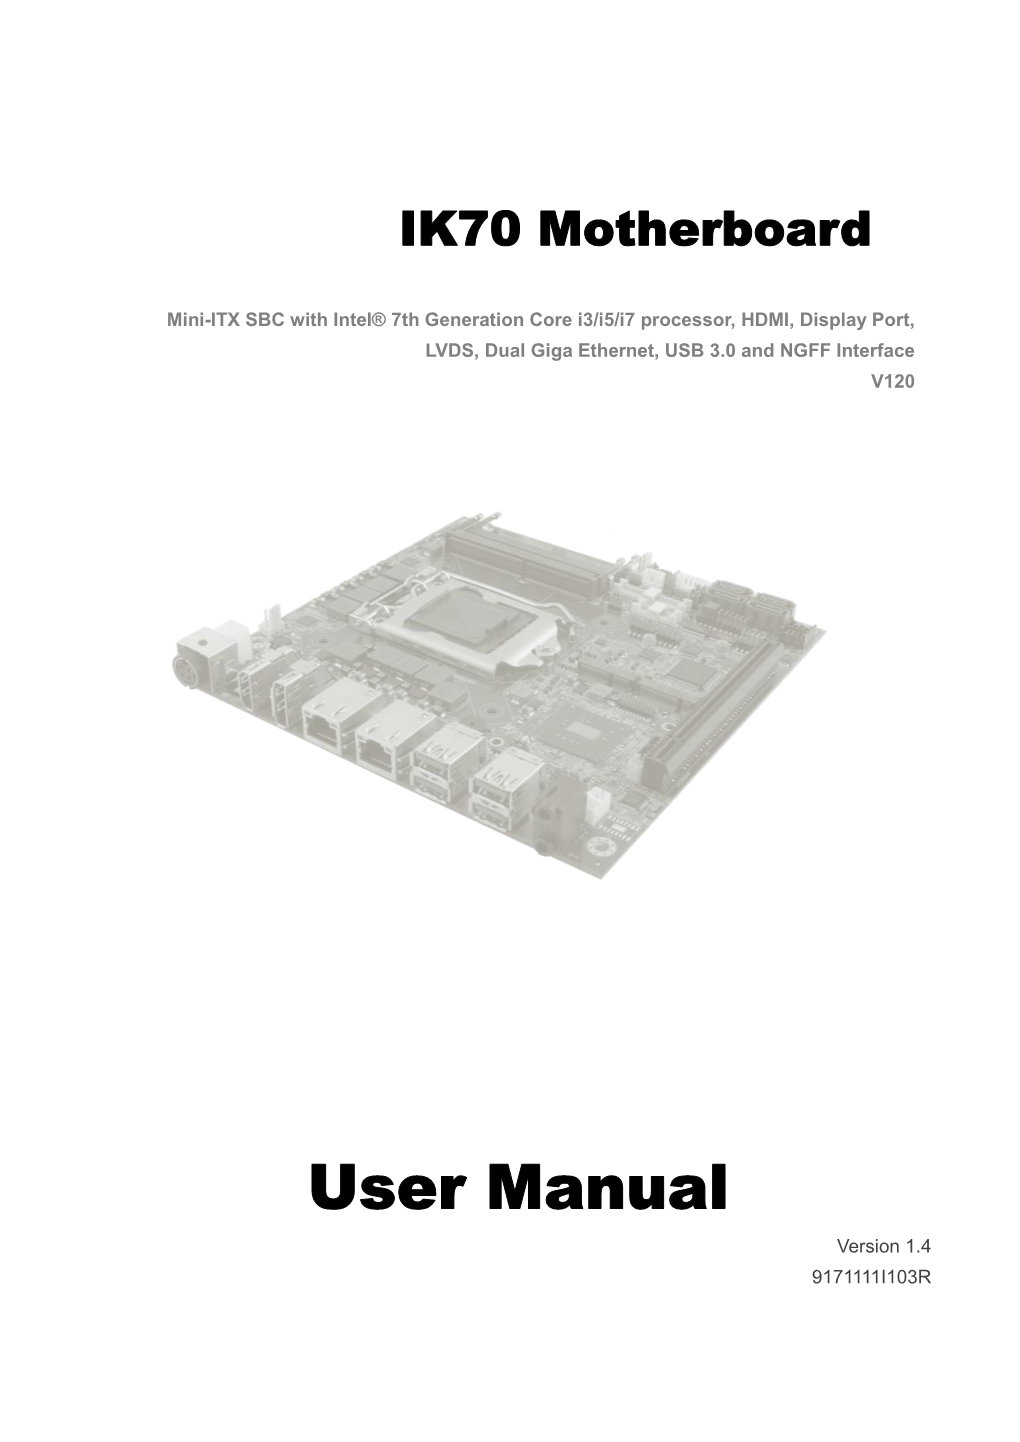 IK70 Motherboard User Manual